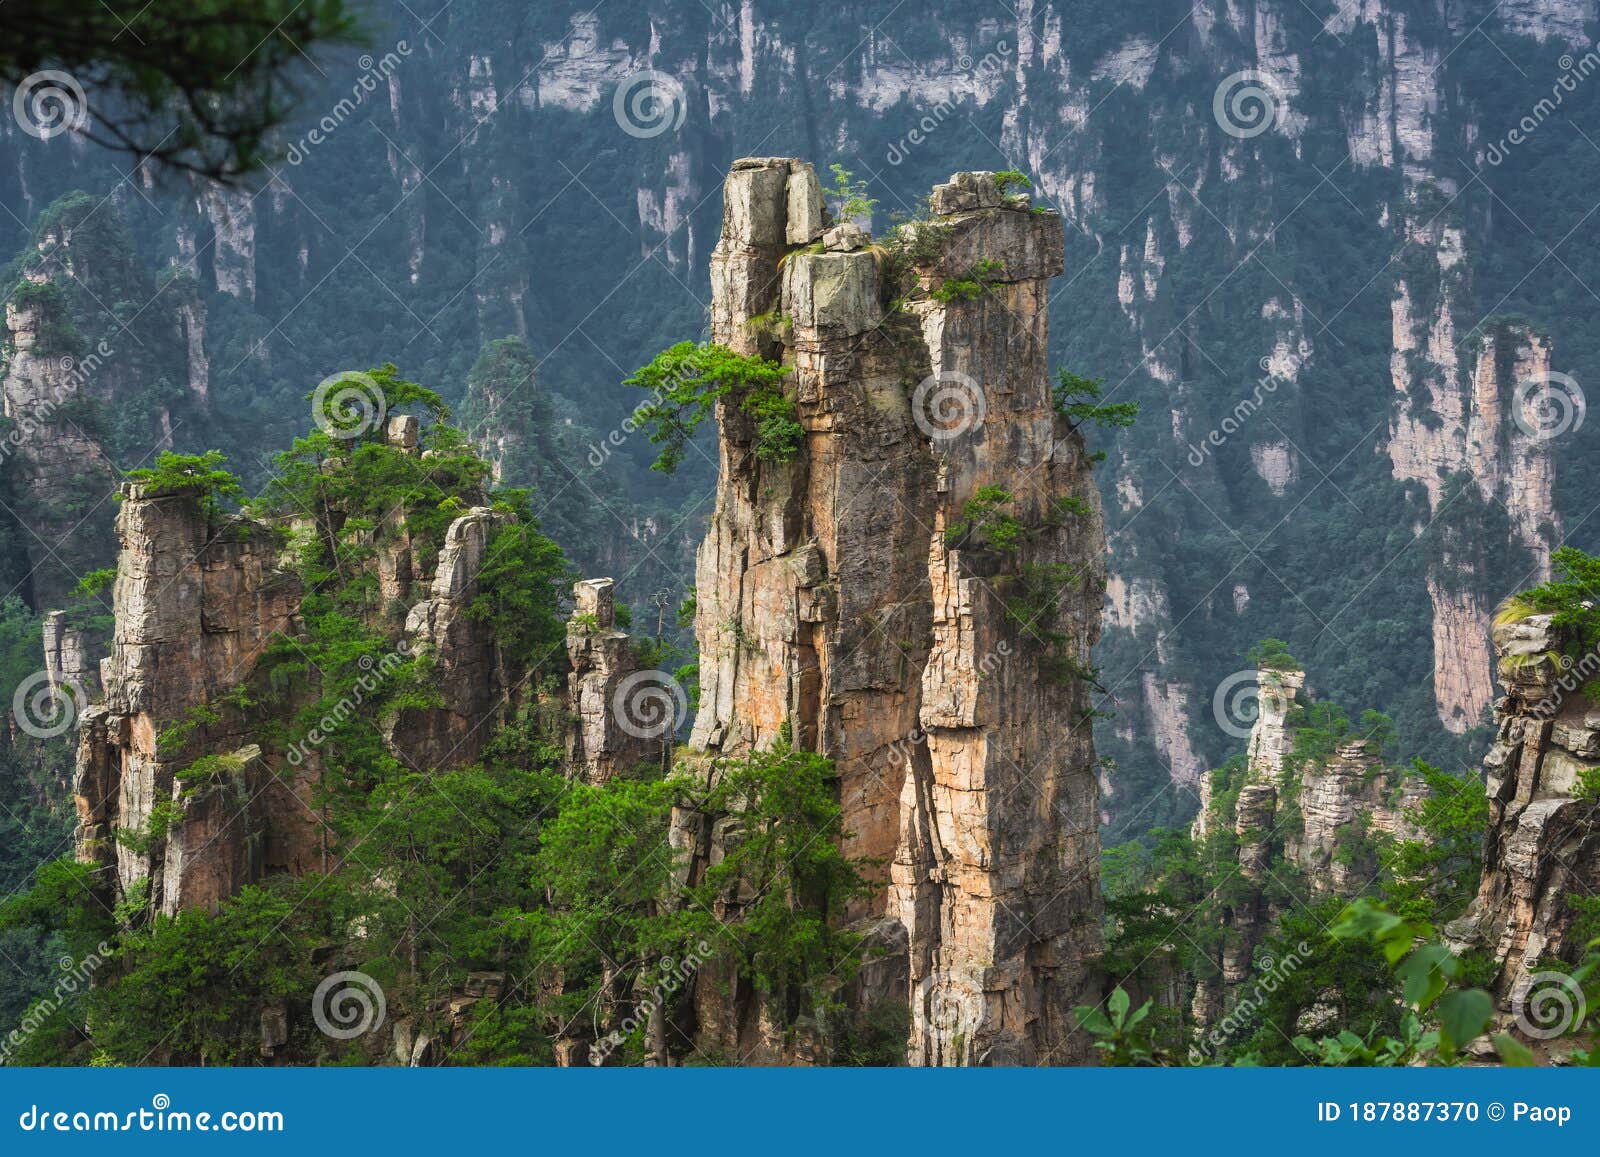 stone pillars of tianzi mountains in zhangjiajie